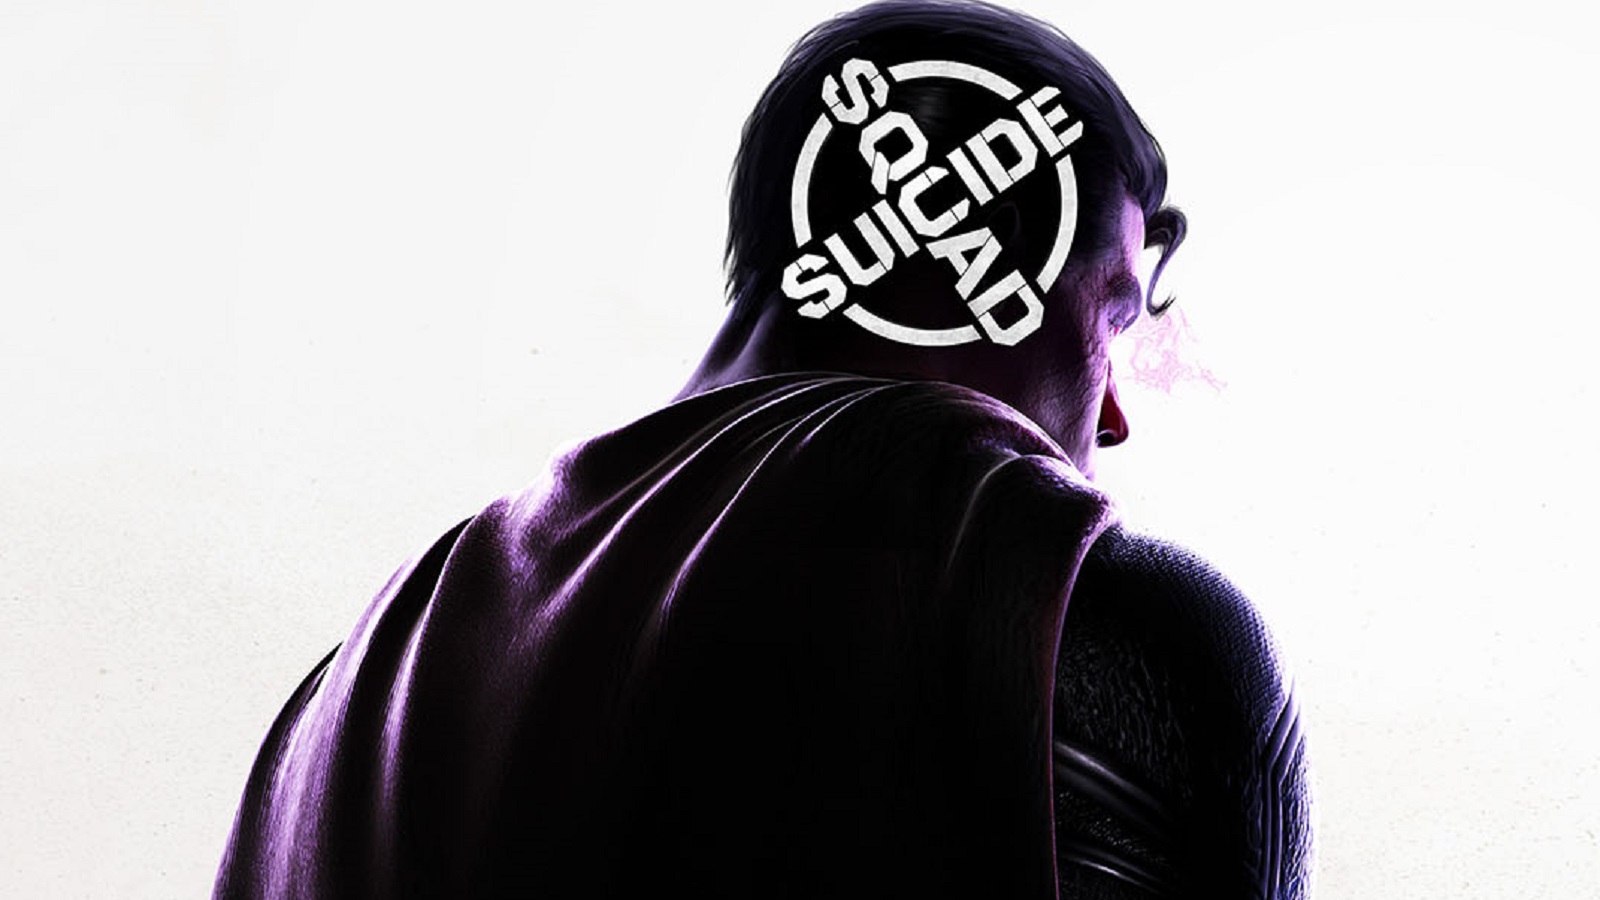 Rocksteady (Batman Arkham) présente enfin son jeu Suicide Squad